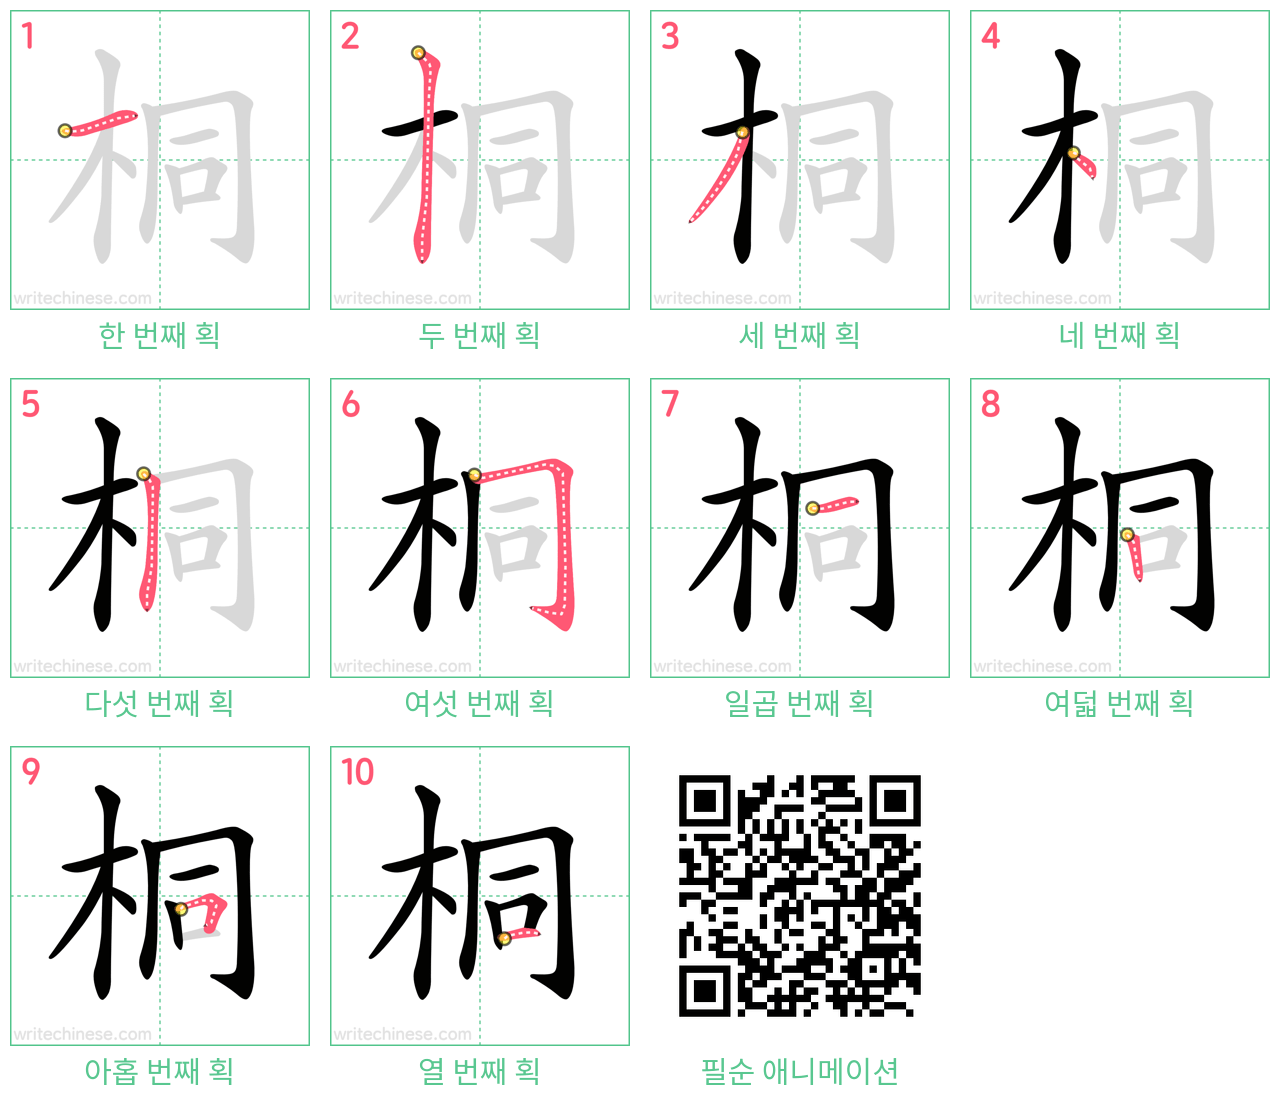 桐 step-by-step stroke order diagrams